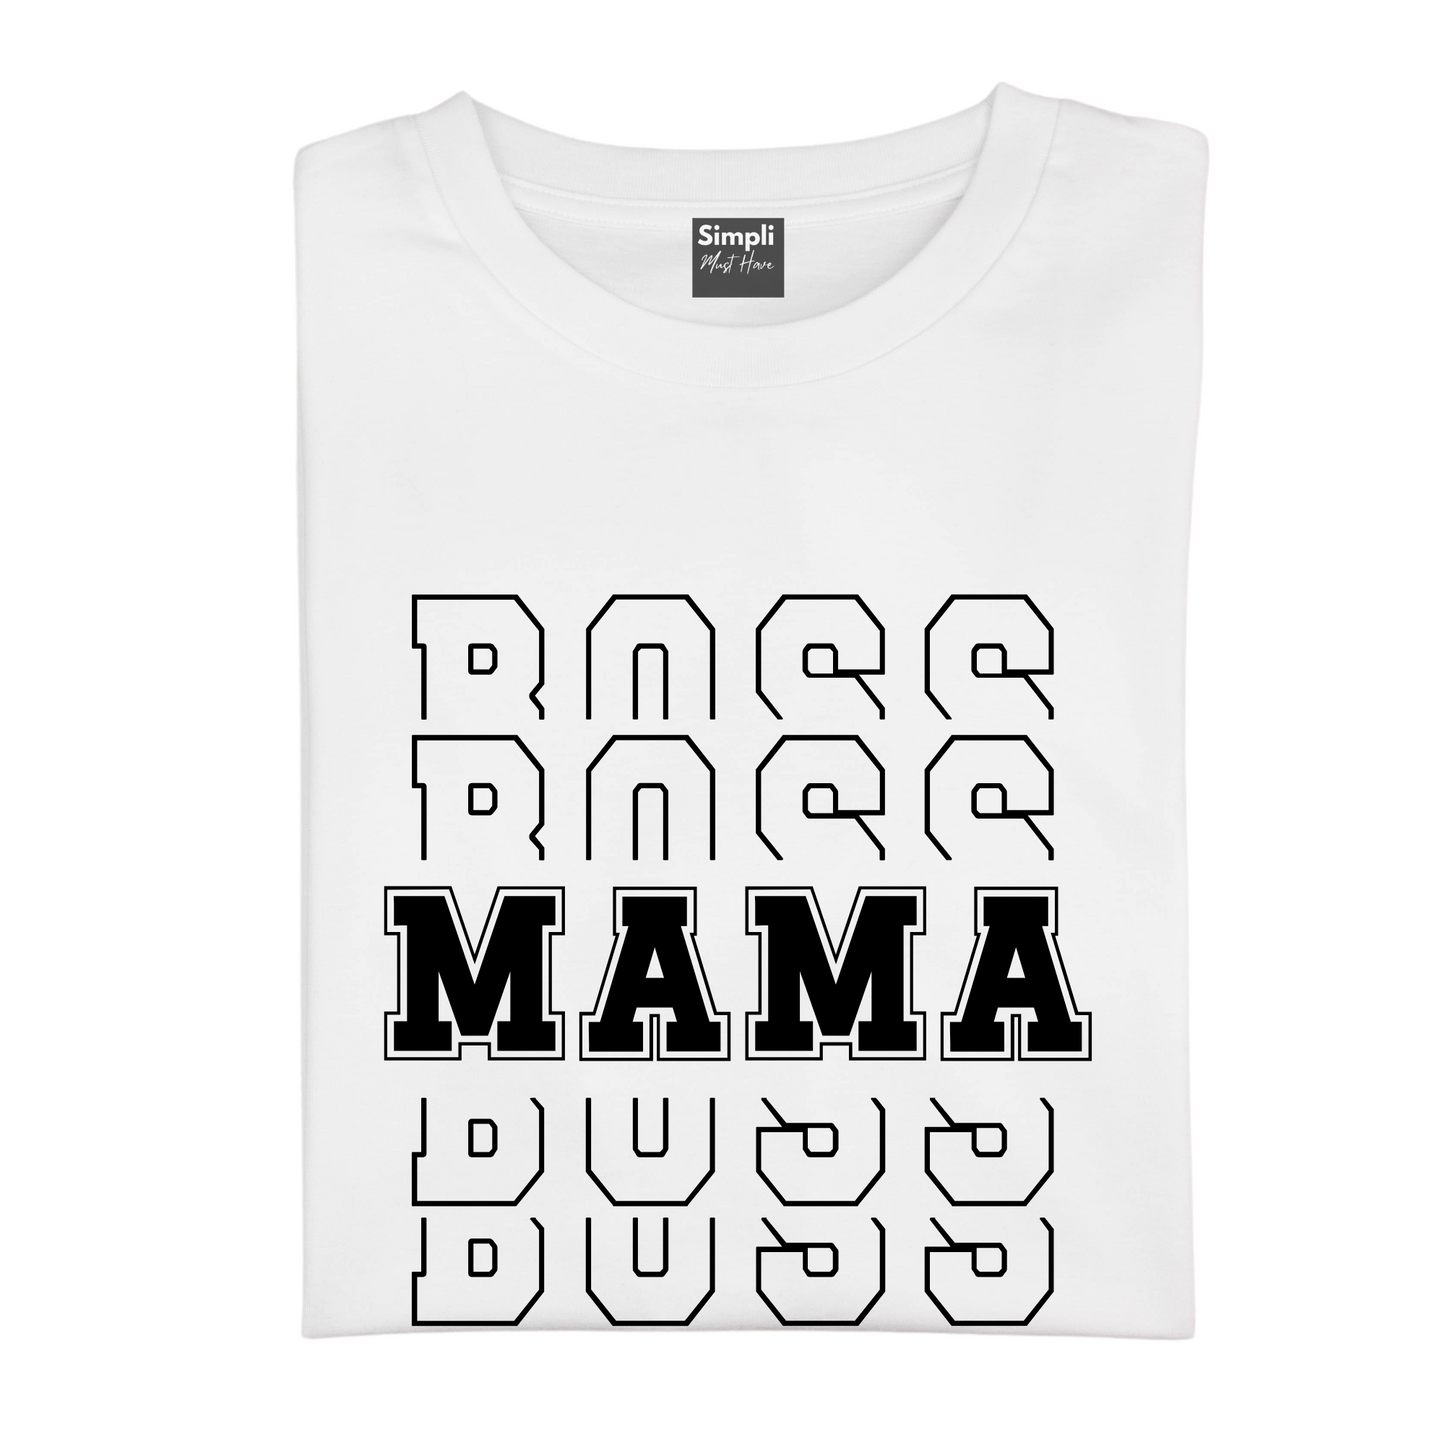 Boss Mama Tshirt